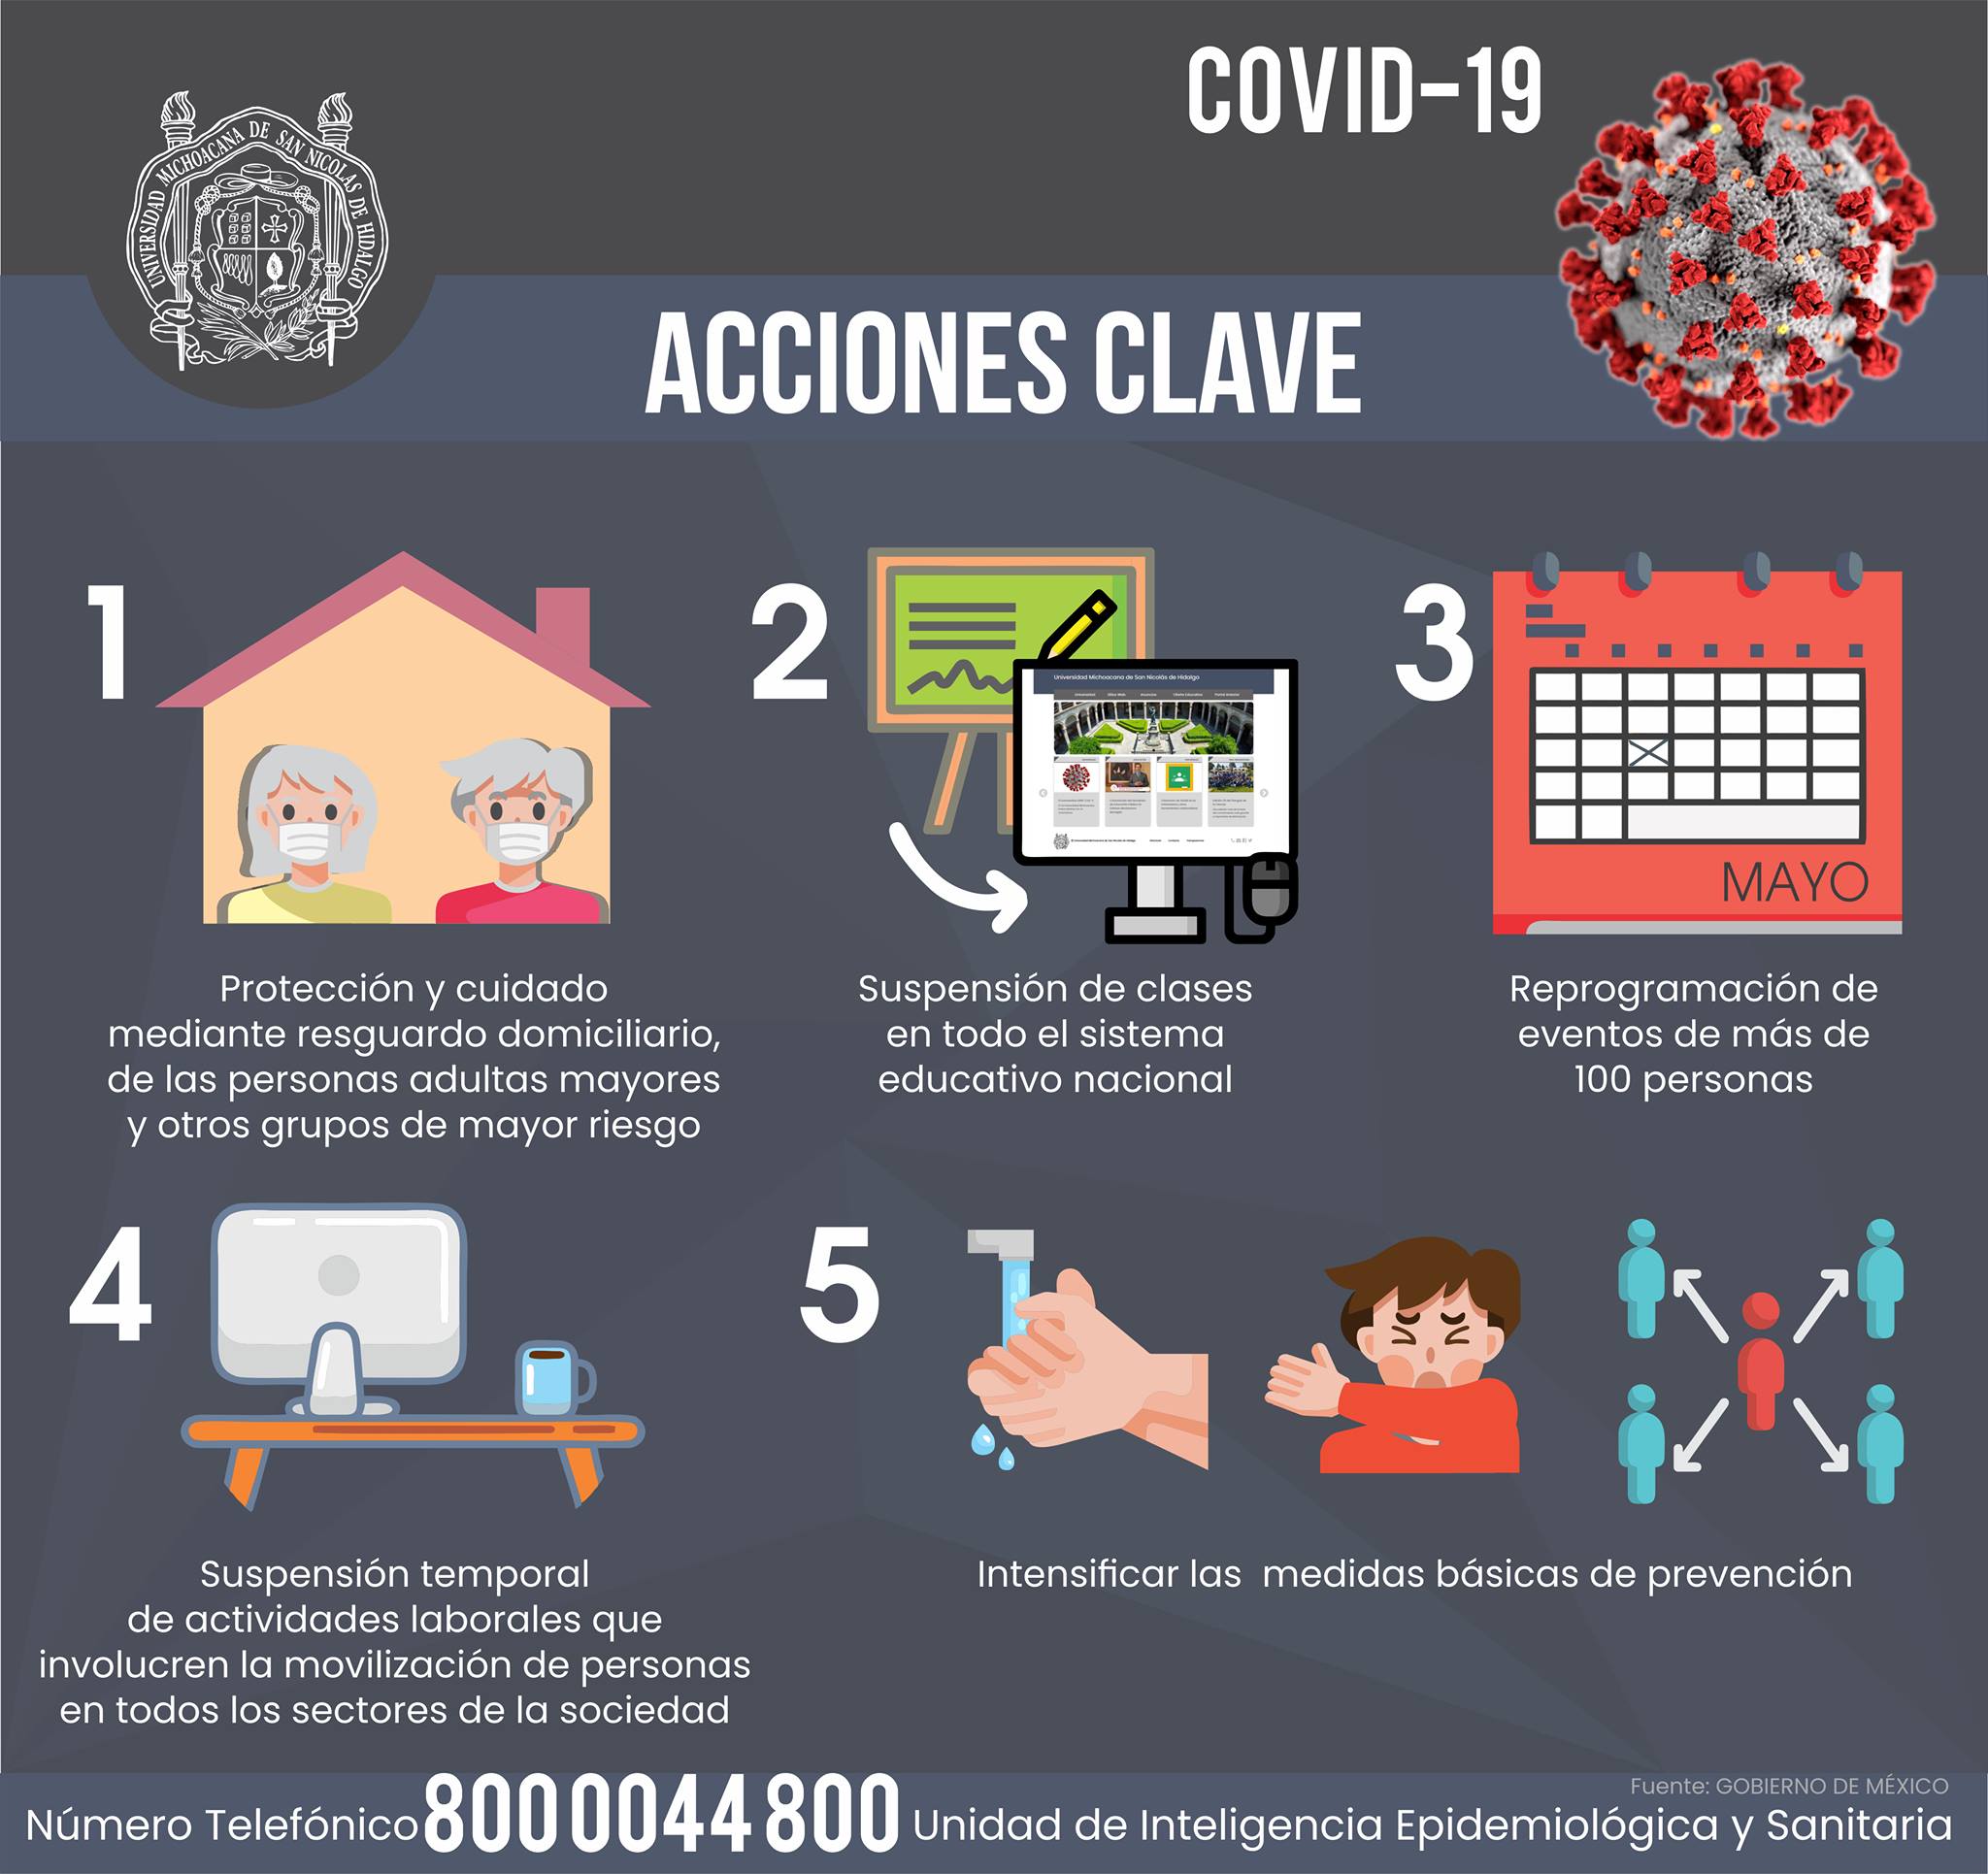 Acciones clave contra la propagación del coronavirus COVID-19